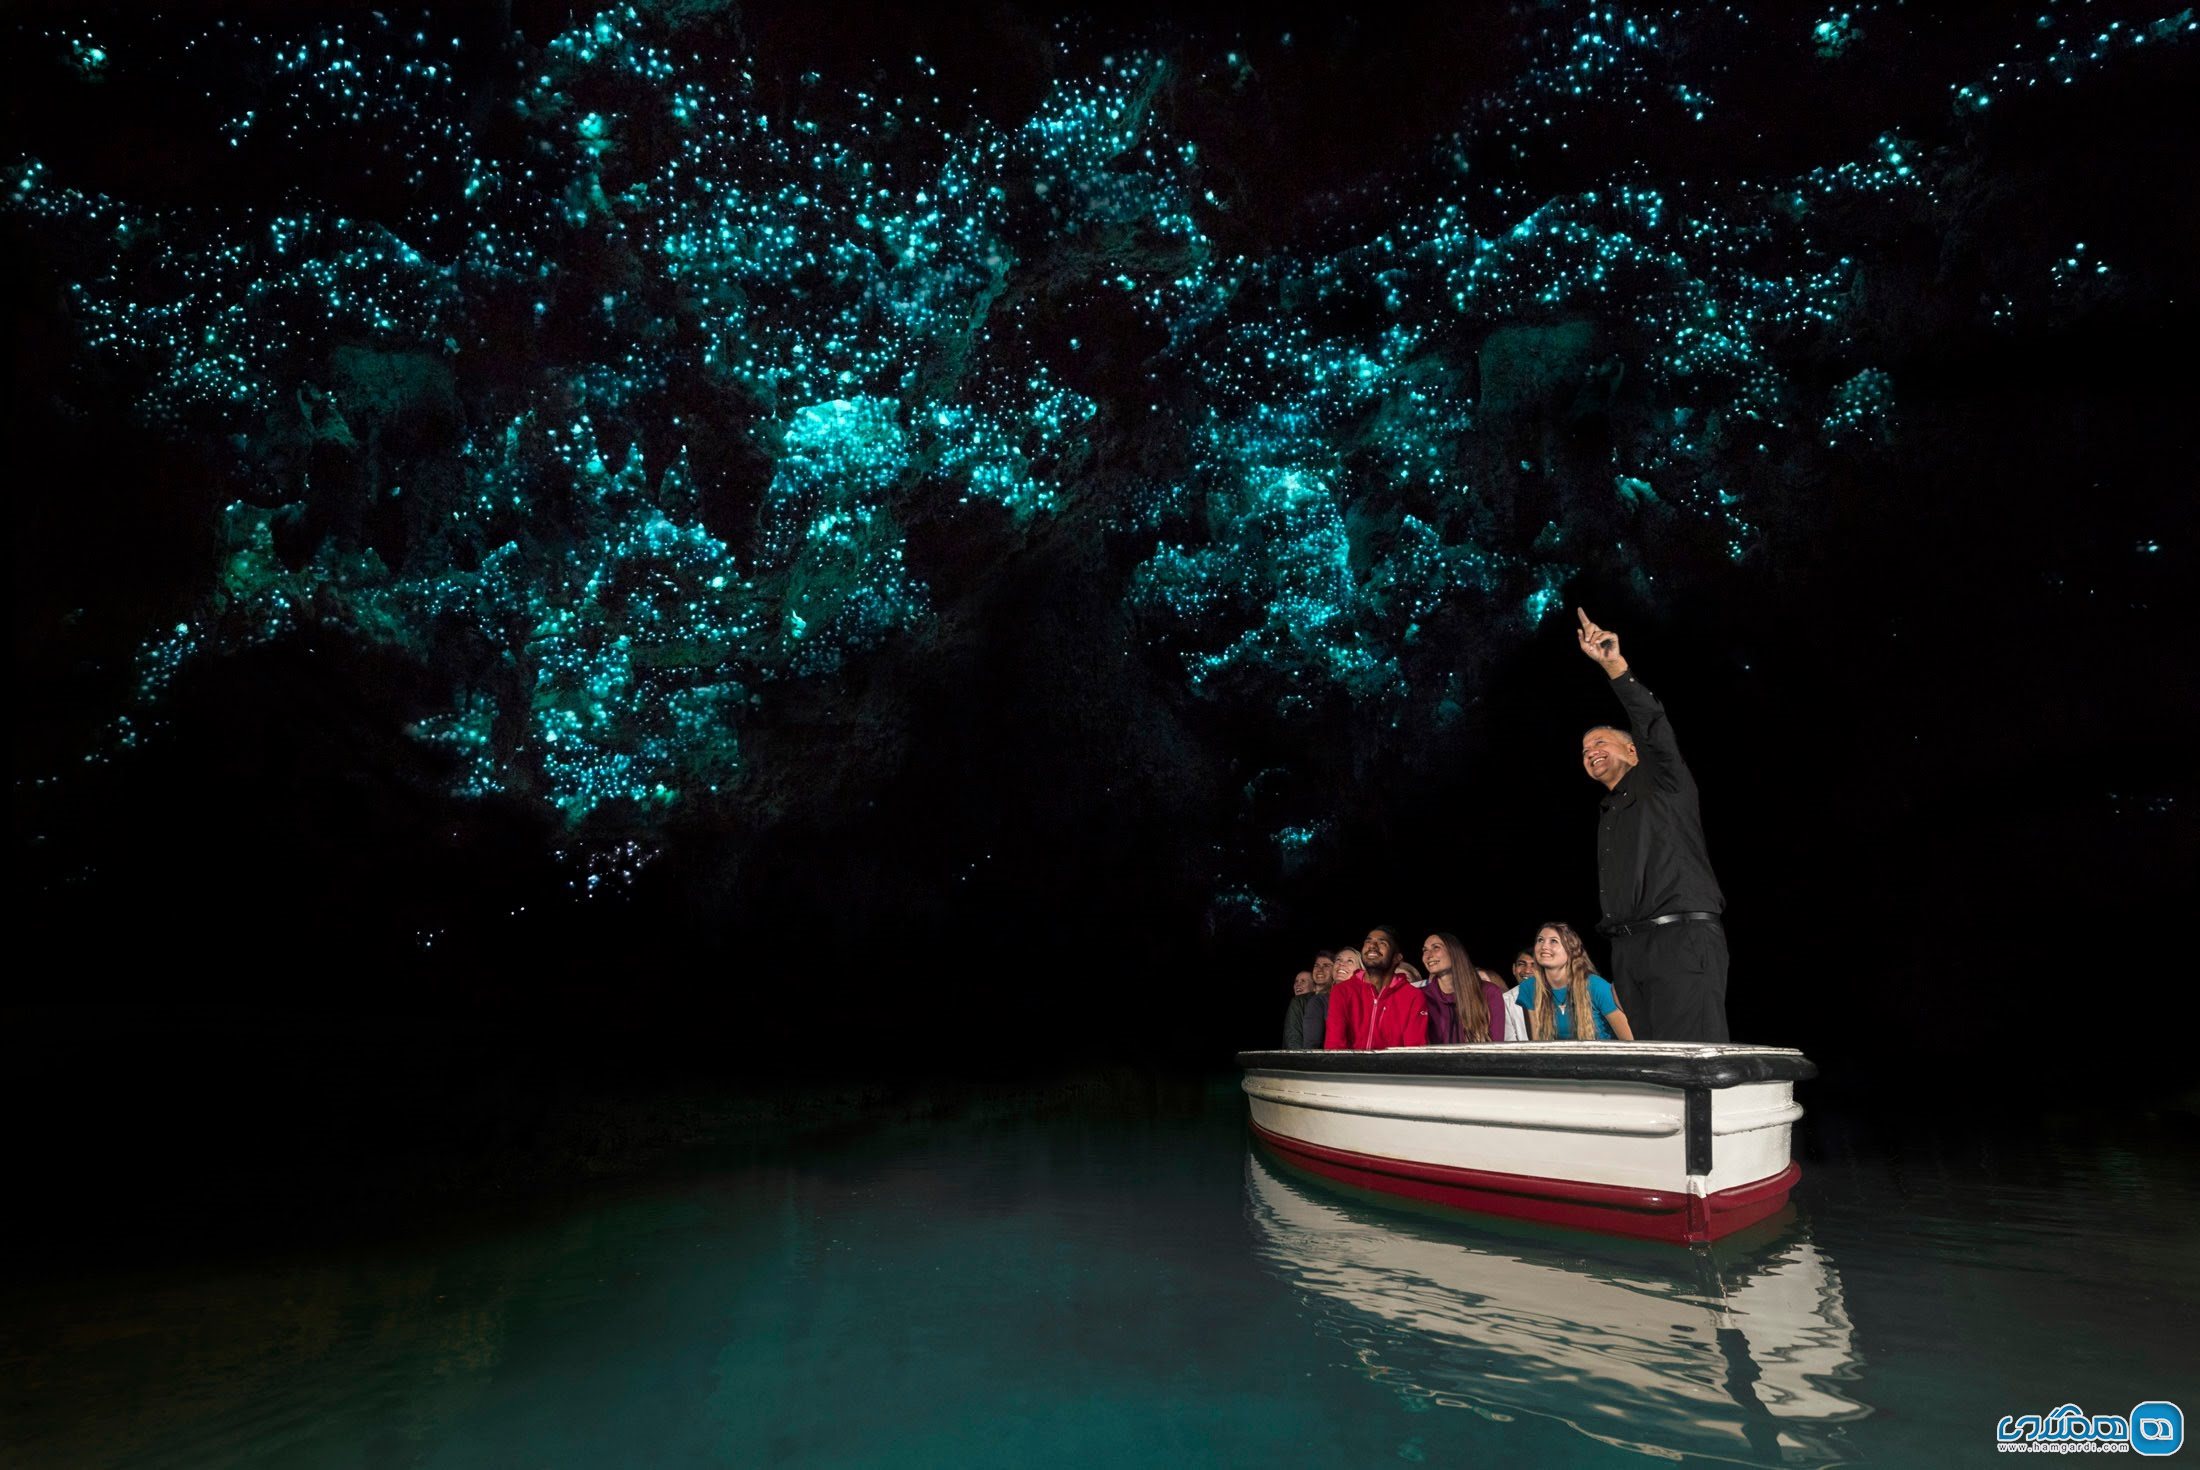 غار کرم شب تاب در نیوزیلند (Waitomo Glowworm)